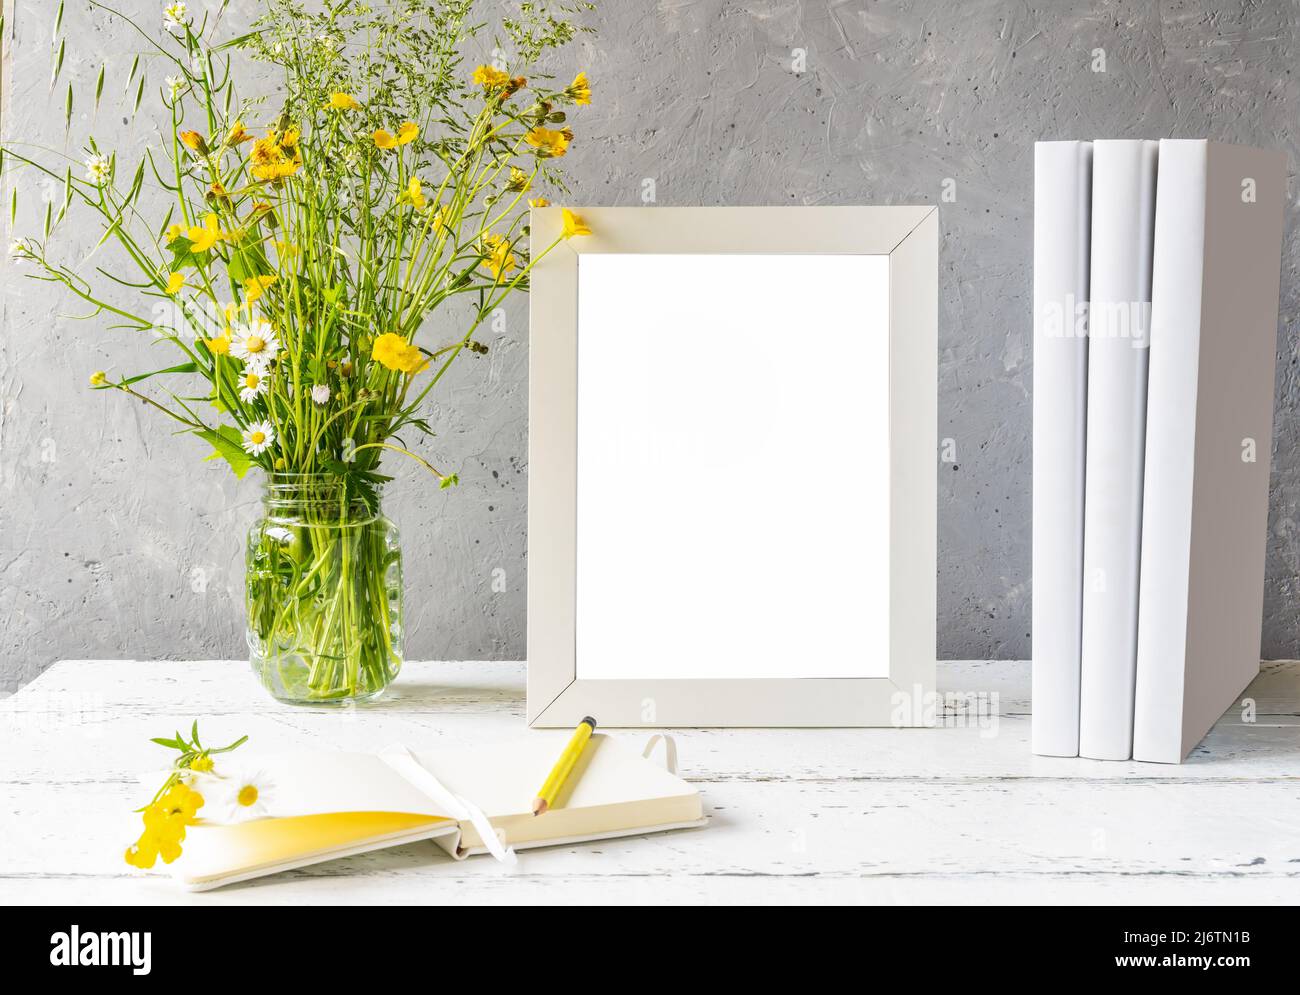 Modellerstellung. Weißer Rahmen auf weißem Holztisch mit grauem Betonhintergrund, Büchern, Notizbuch und wilden Blumen Stockfoto